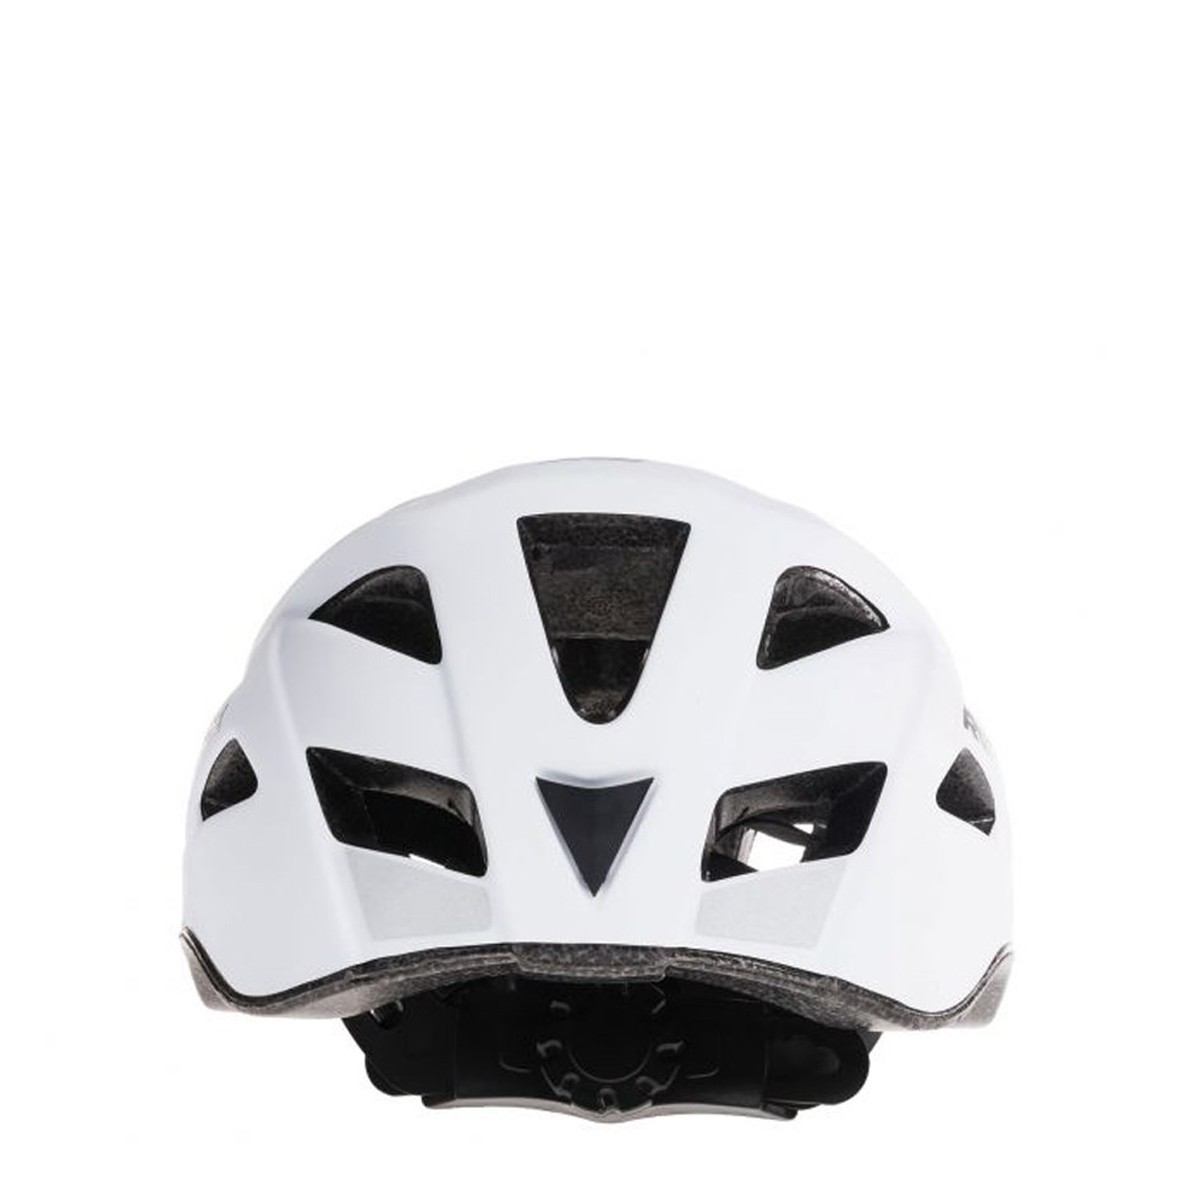 Rollerblade Stride Helmet White Kask RLB.067H0200